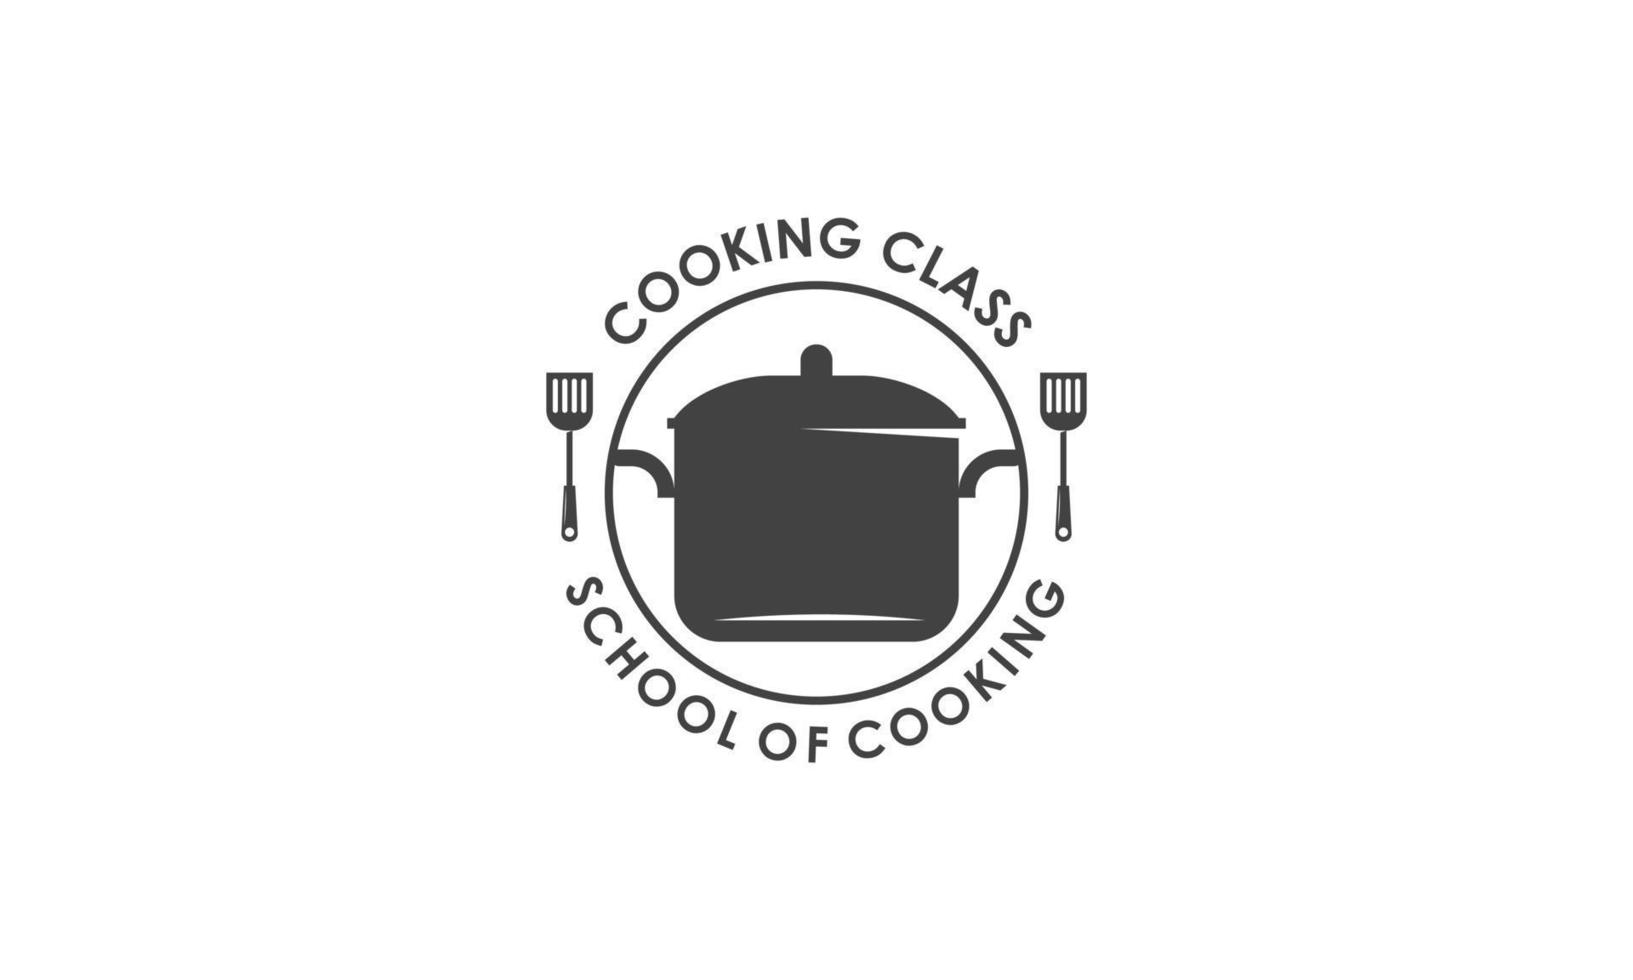 ancien cuisine classe et nourriture Étiquettes emblèmes badges logo culinaire école cuisine cours vecteur